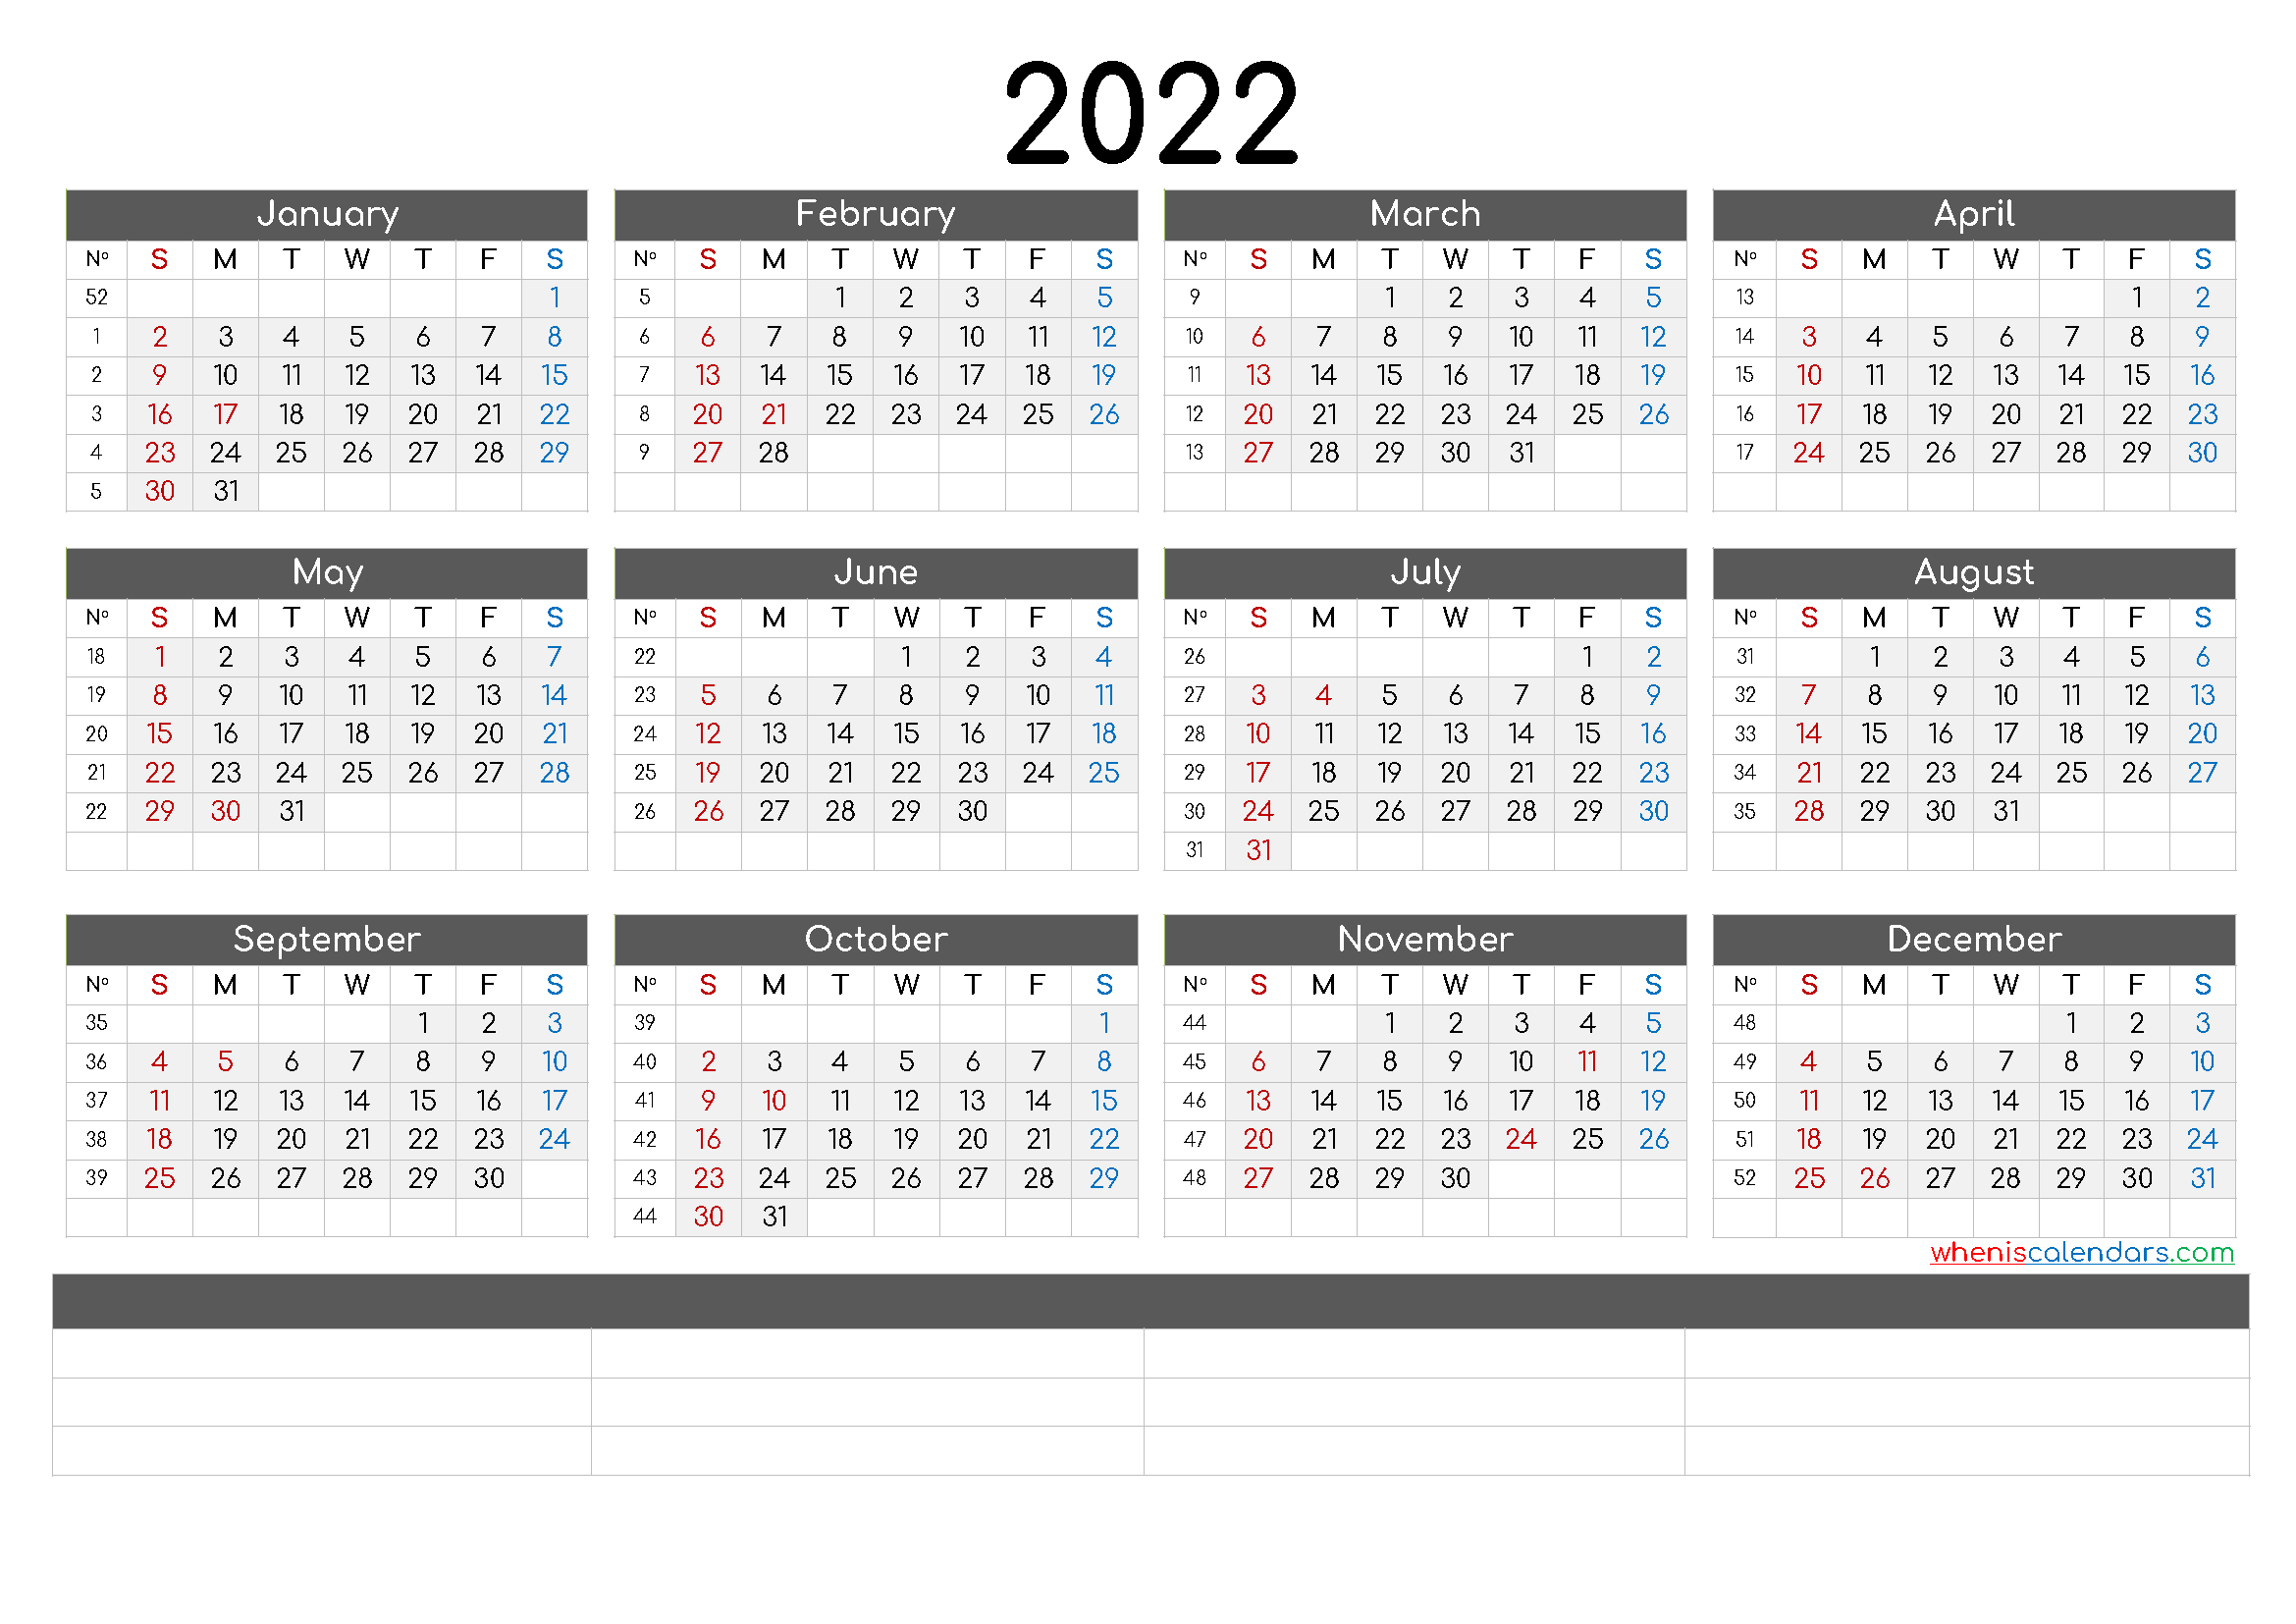 Printable 2022 Calendar by Month - CalendraEX.com